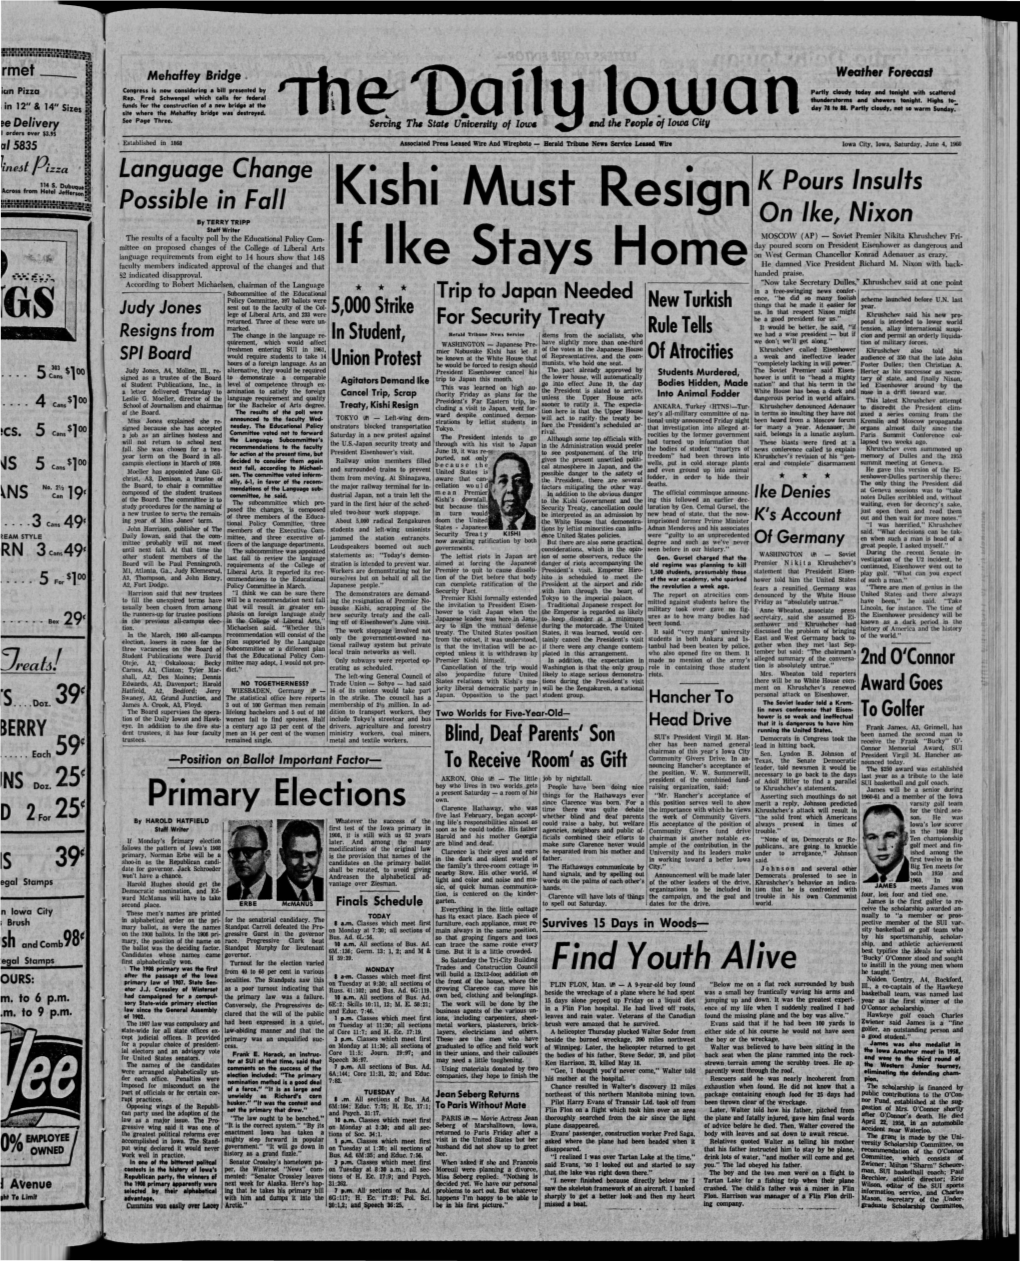 Daily Iowan (Iowa City, Iowa), 1960-06-04